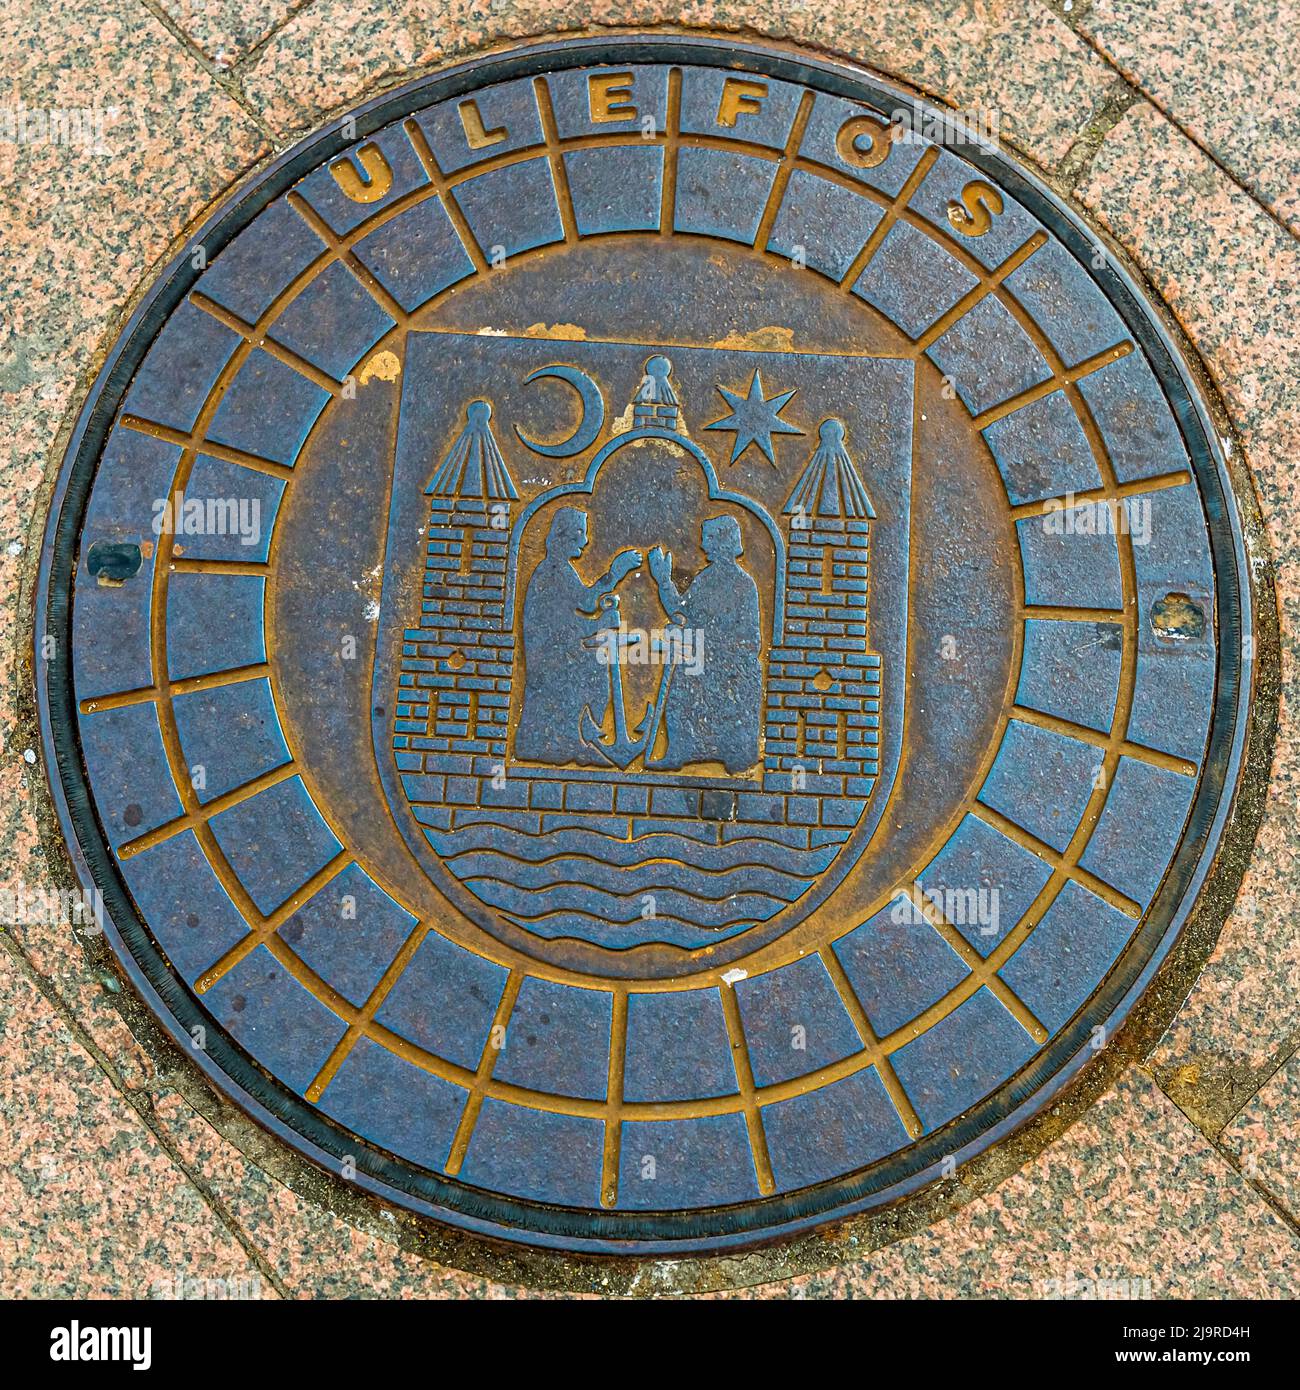 Manhole cover in Aarhus, Denmark Stock Photo